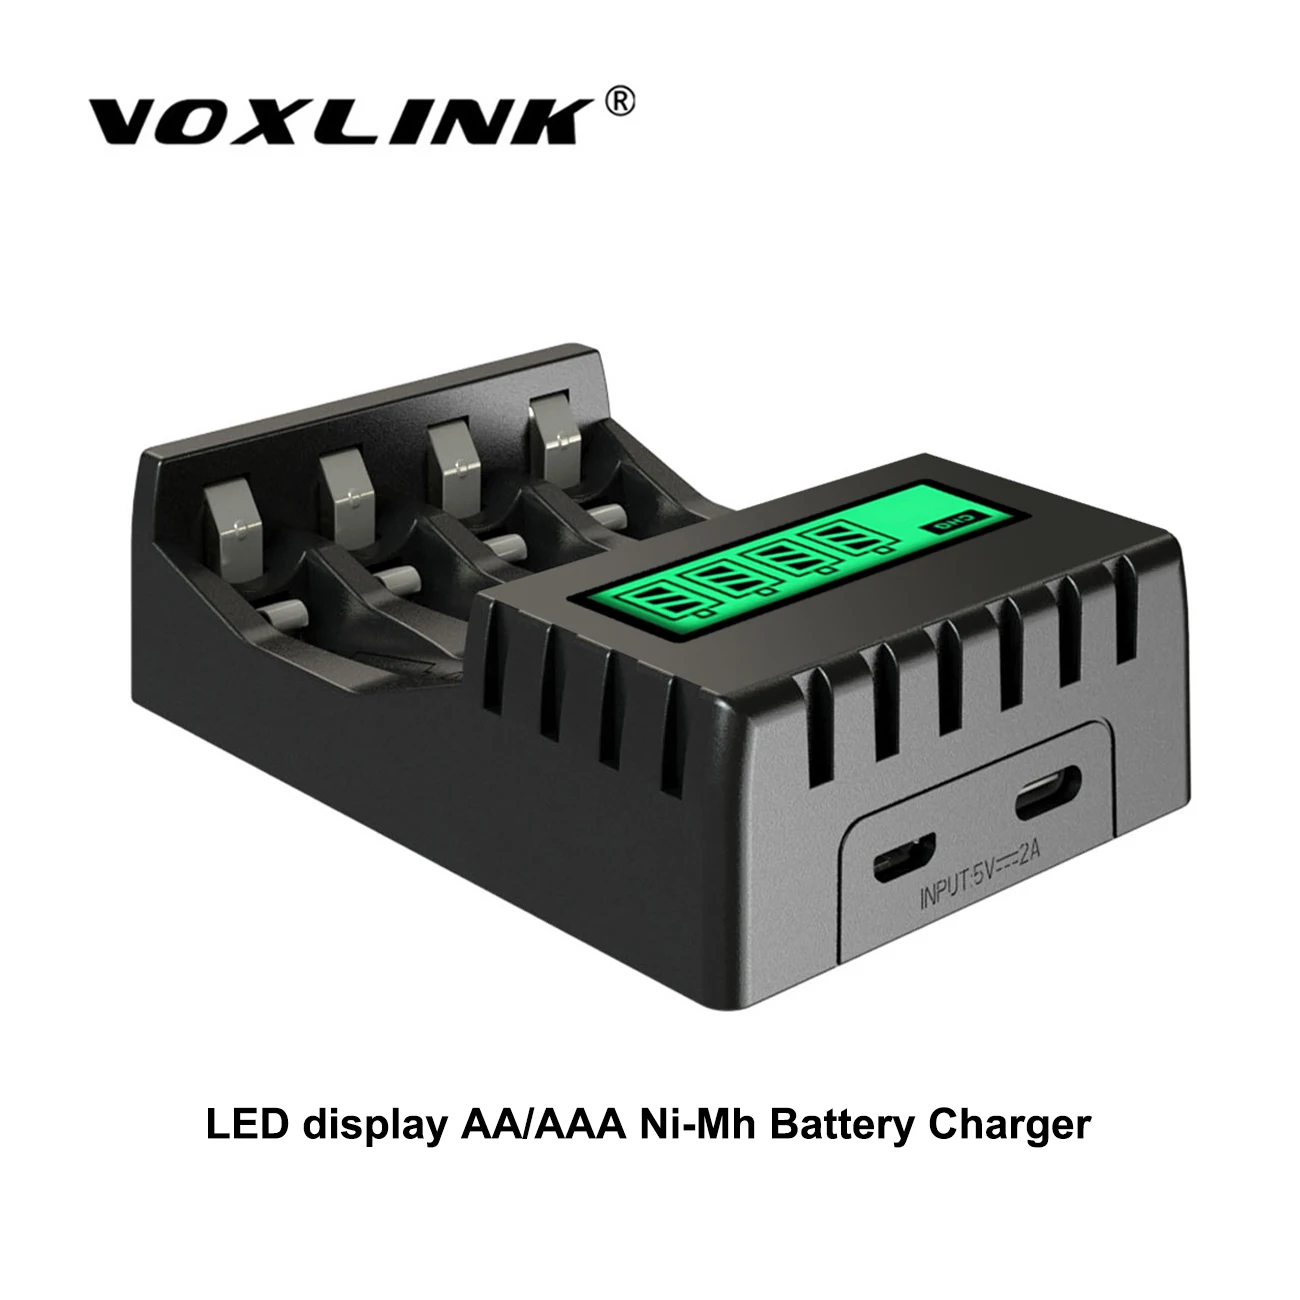 

Умное зарядное устройство VOXLINK, USB, ЖК-дисплей, 4 слота, AA/AAA, 1,2 в, никель-металл-гидридная/никель-кадмиевая аккумуляторная батарея, универсаль...